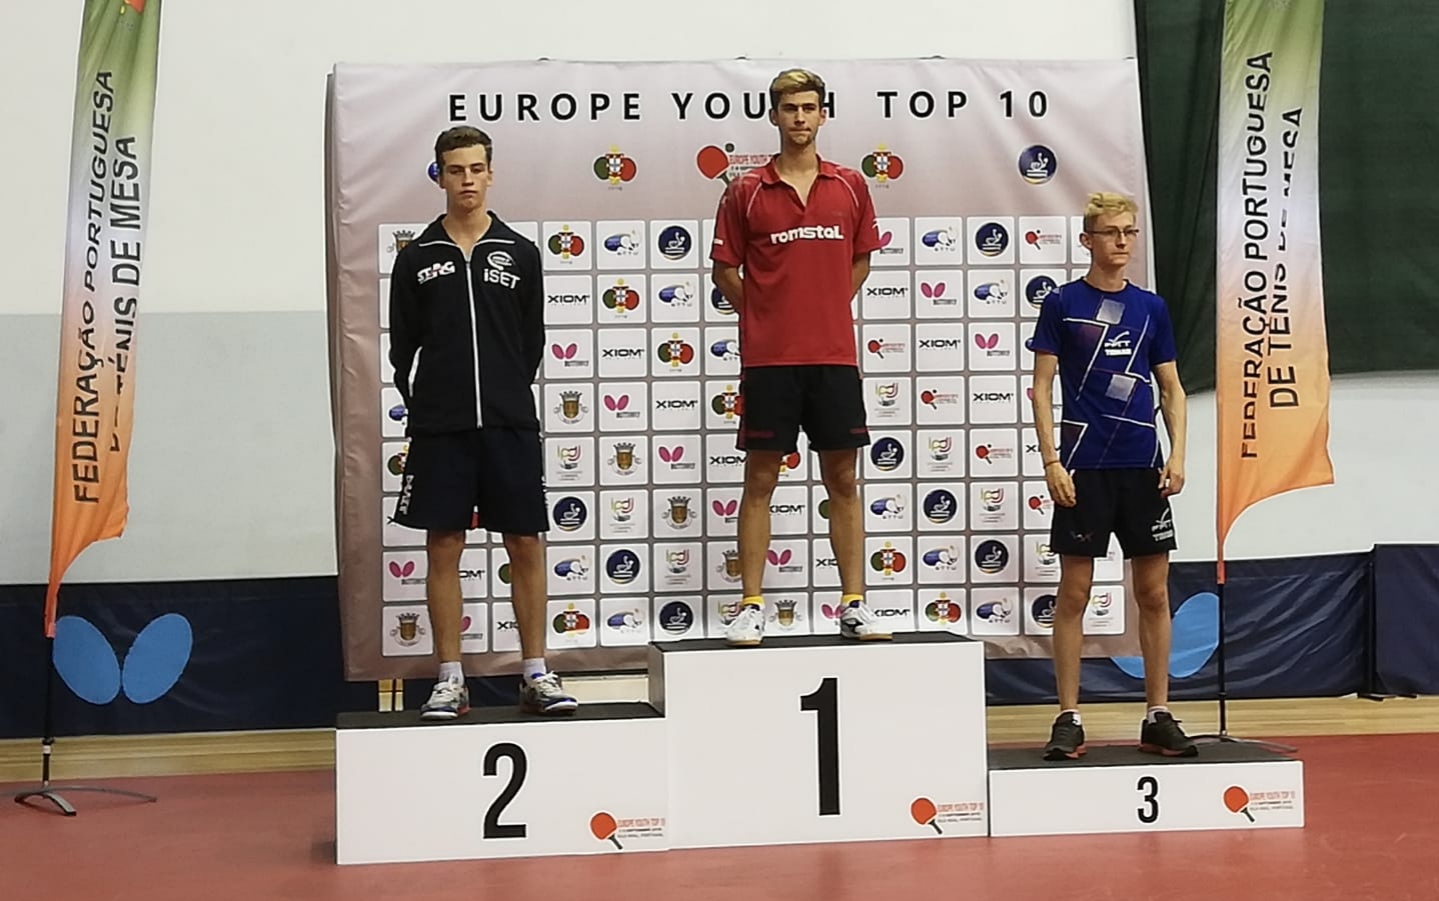 Matteo Mutti podio Top 10 Europeo Giovanile 2018